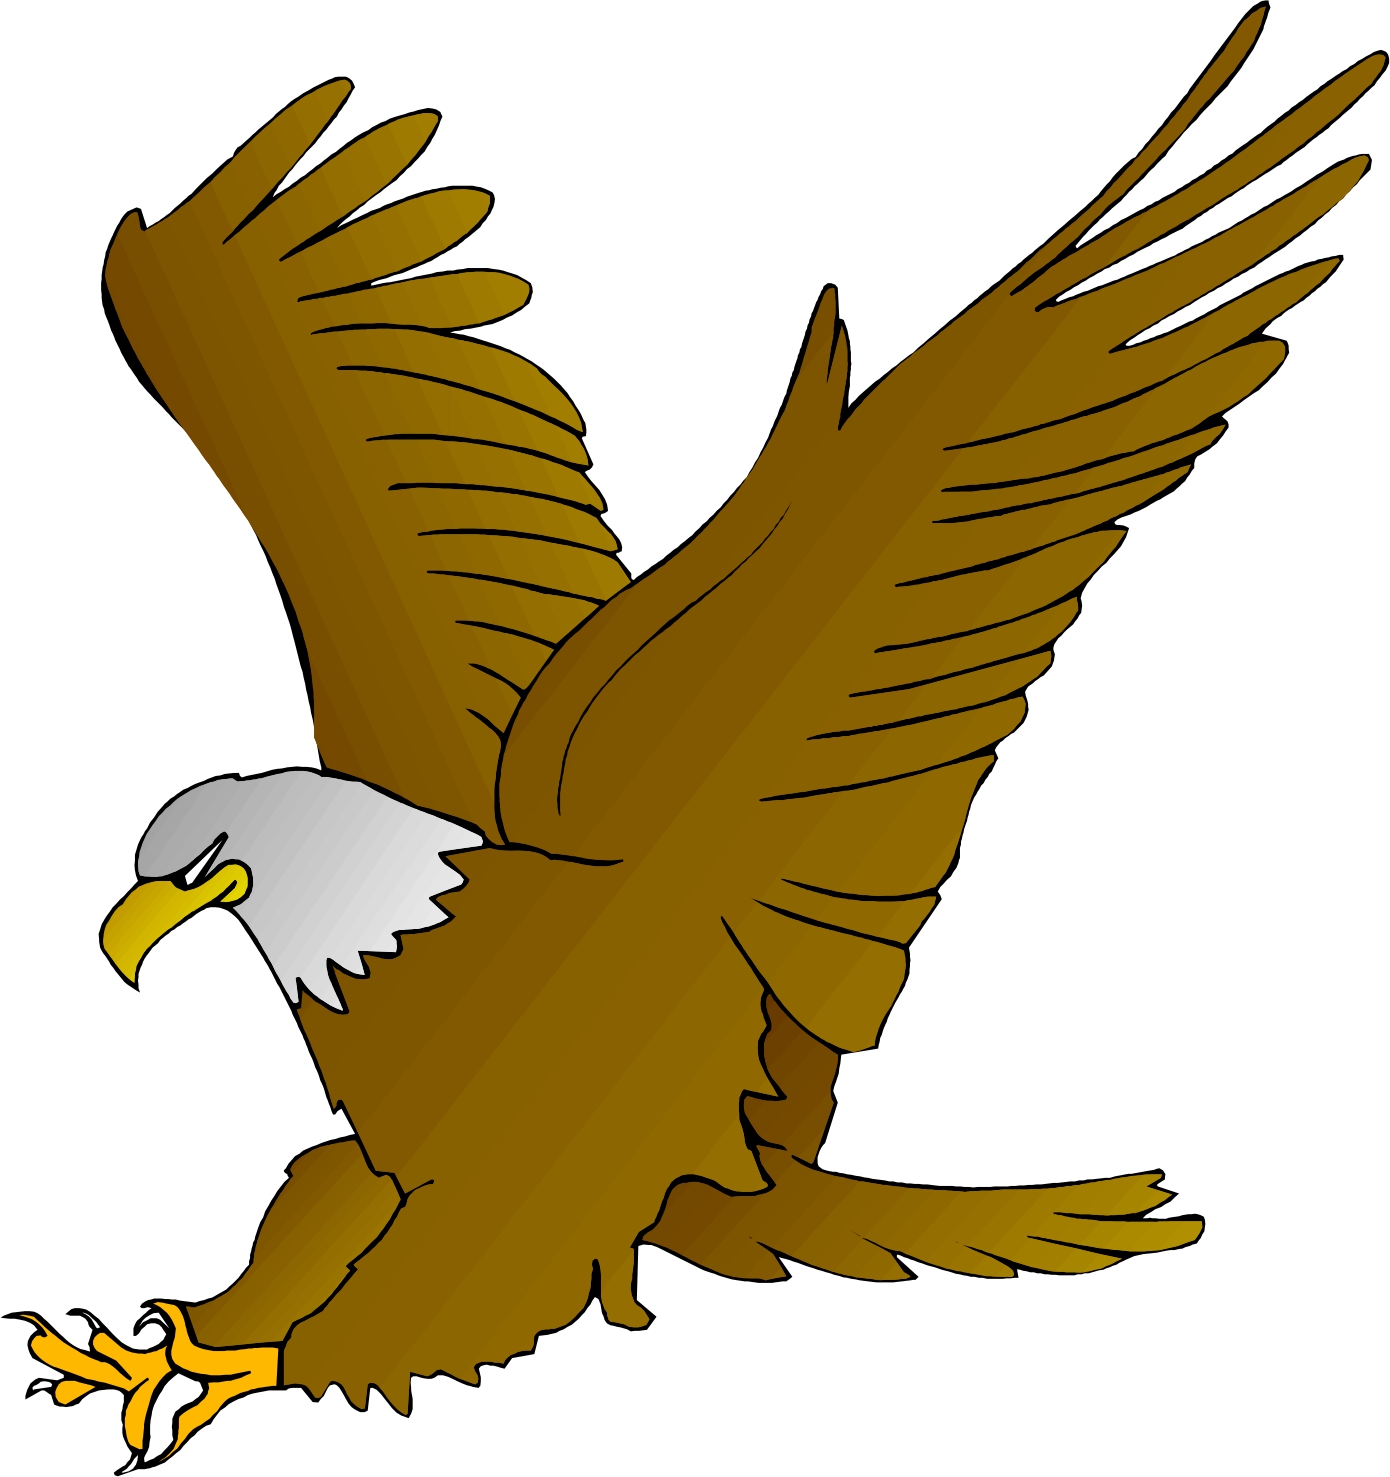 Eagle clipart free graphics o